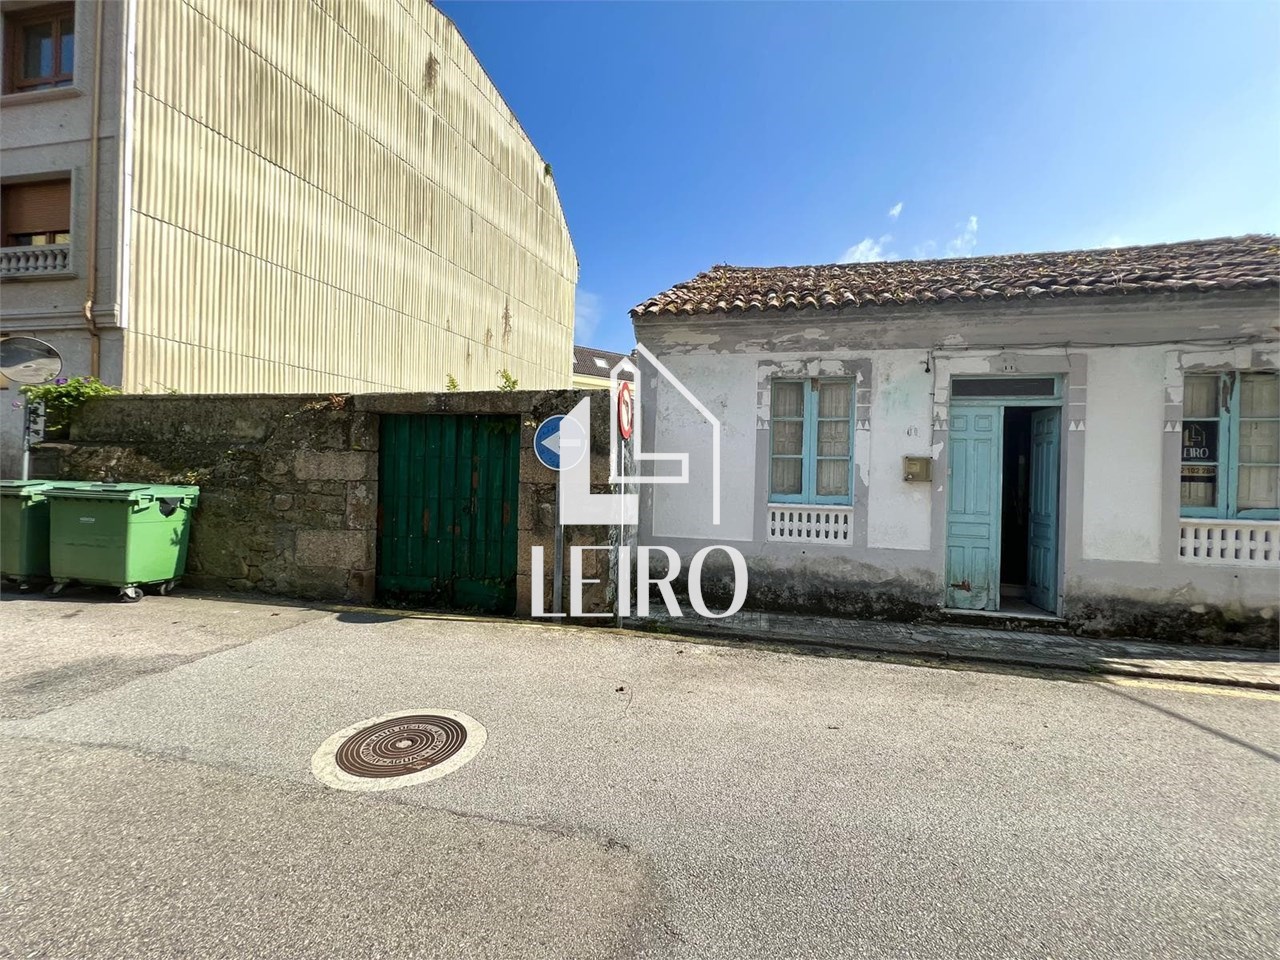 Foto 5 Casa a Rehabilitar con Terreno Anexo Urbanizable en el Centro de Vilanova